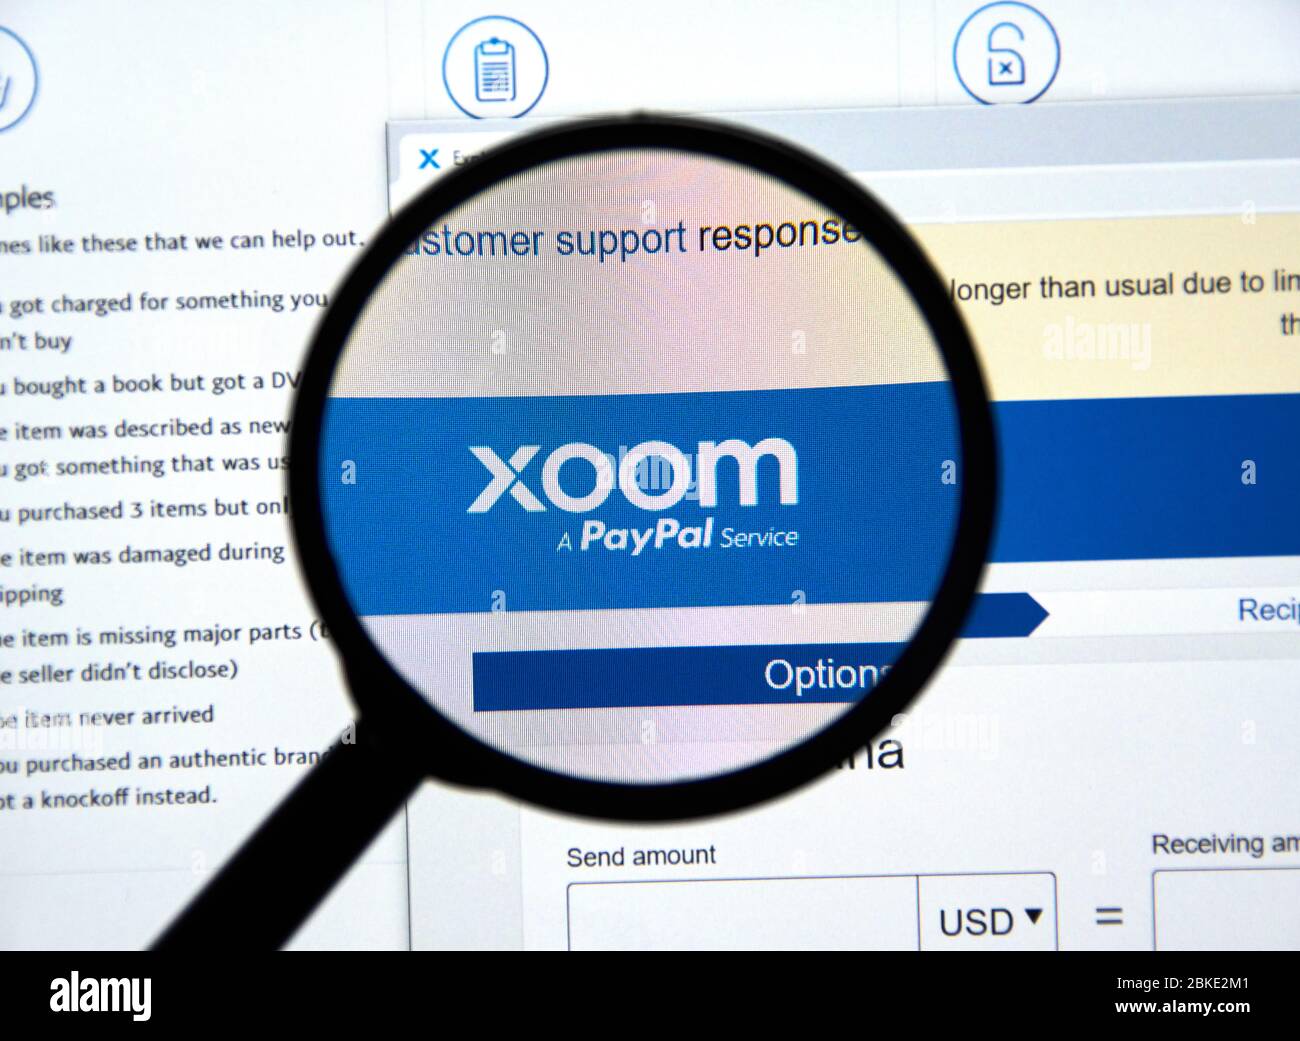 Montreal, Canada - 2 maggio 2020: Sito web e logo Xoom. Xoom è il servizio PayPal di trasferimento elettronico di fondi che permette ai consumatori di inviare denaro, pagare b Foto Stock